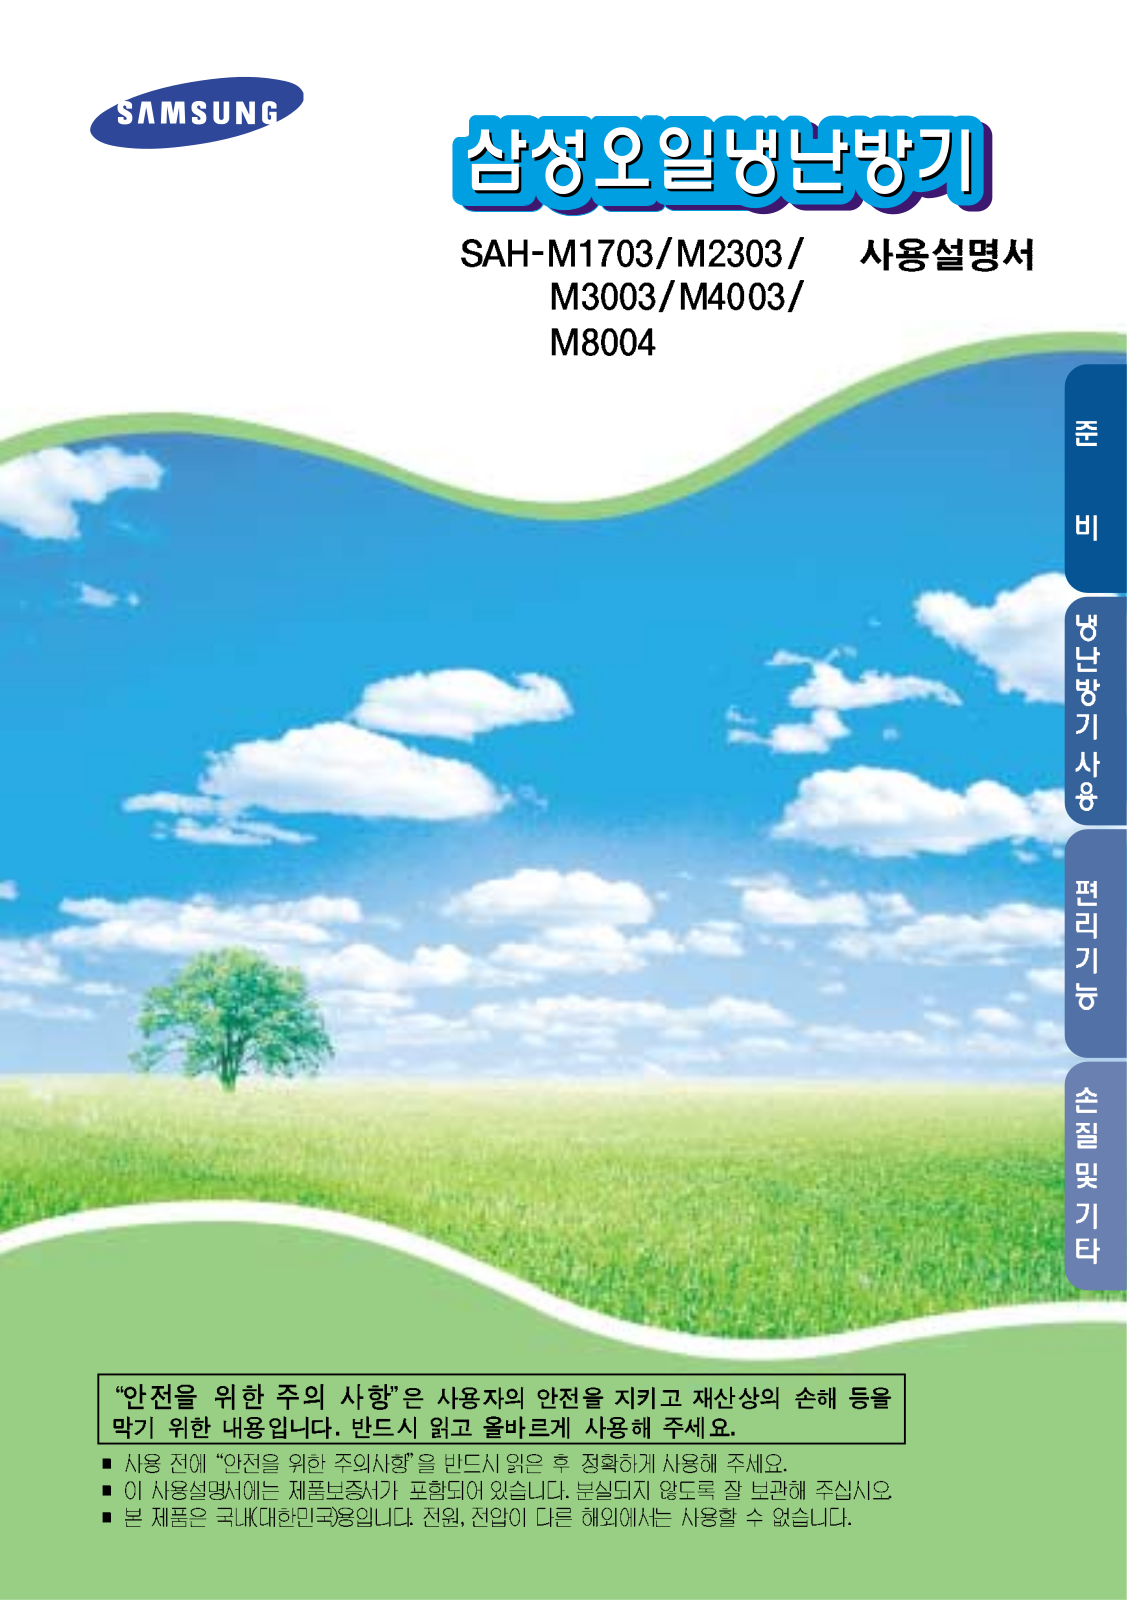 Samsung SAH-M4003, SAH-M3003, SAH-M8004, SAH-M1703, SAH-M2303 User Manual